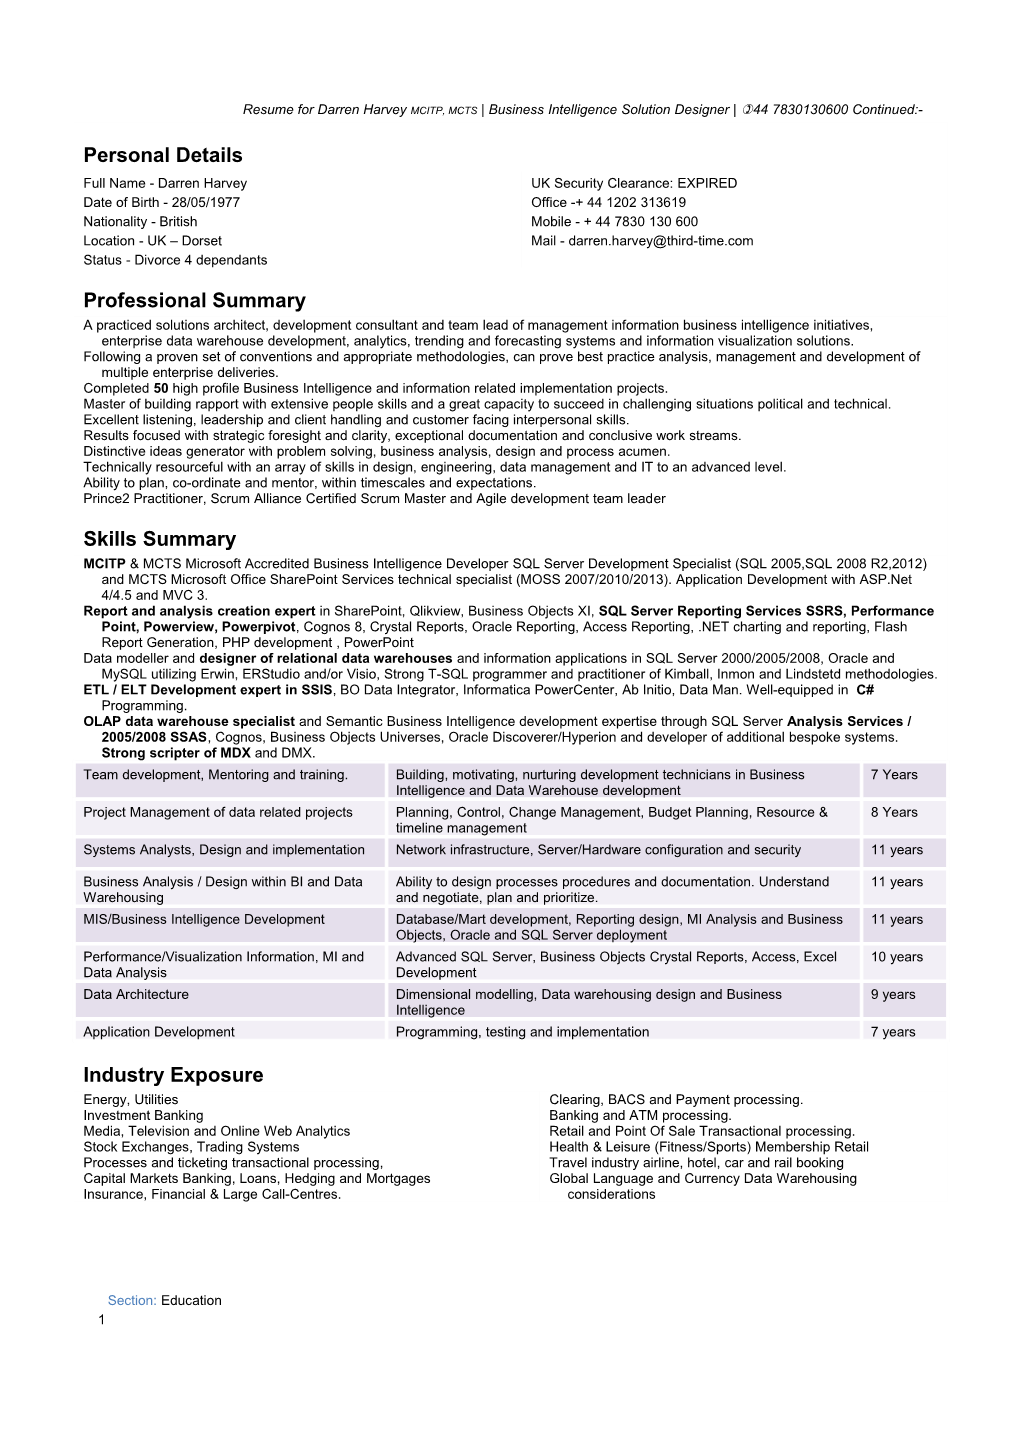 Resume for Darren Harvey MCITP, MCTS Business Intelligence Solution Designer )44 7830130600